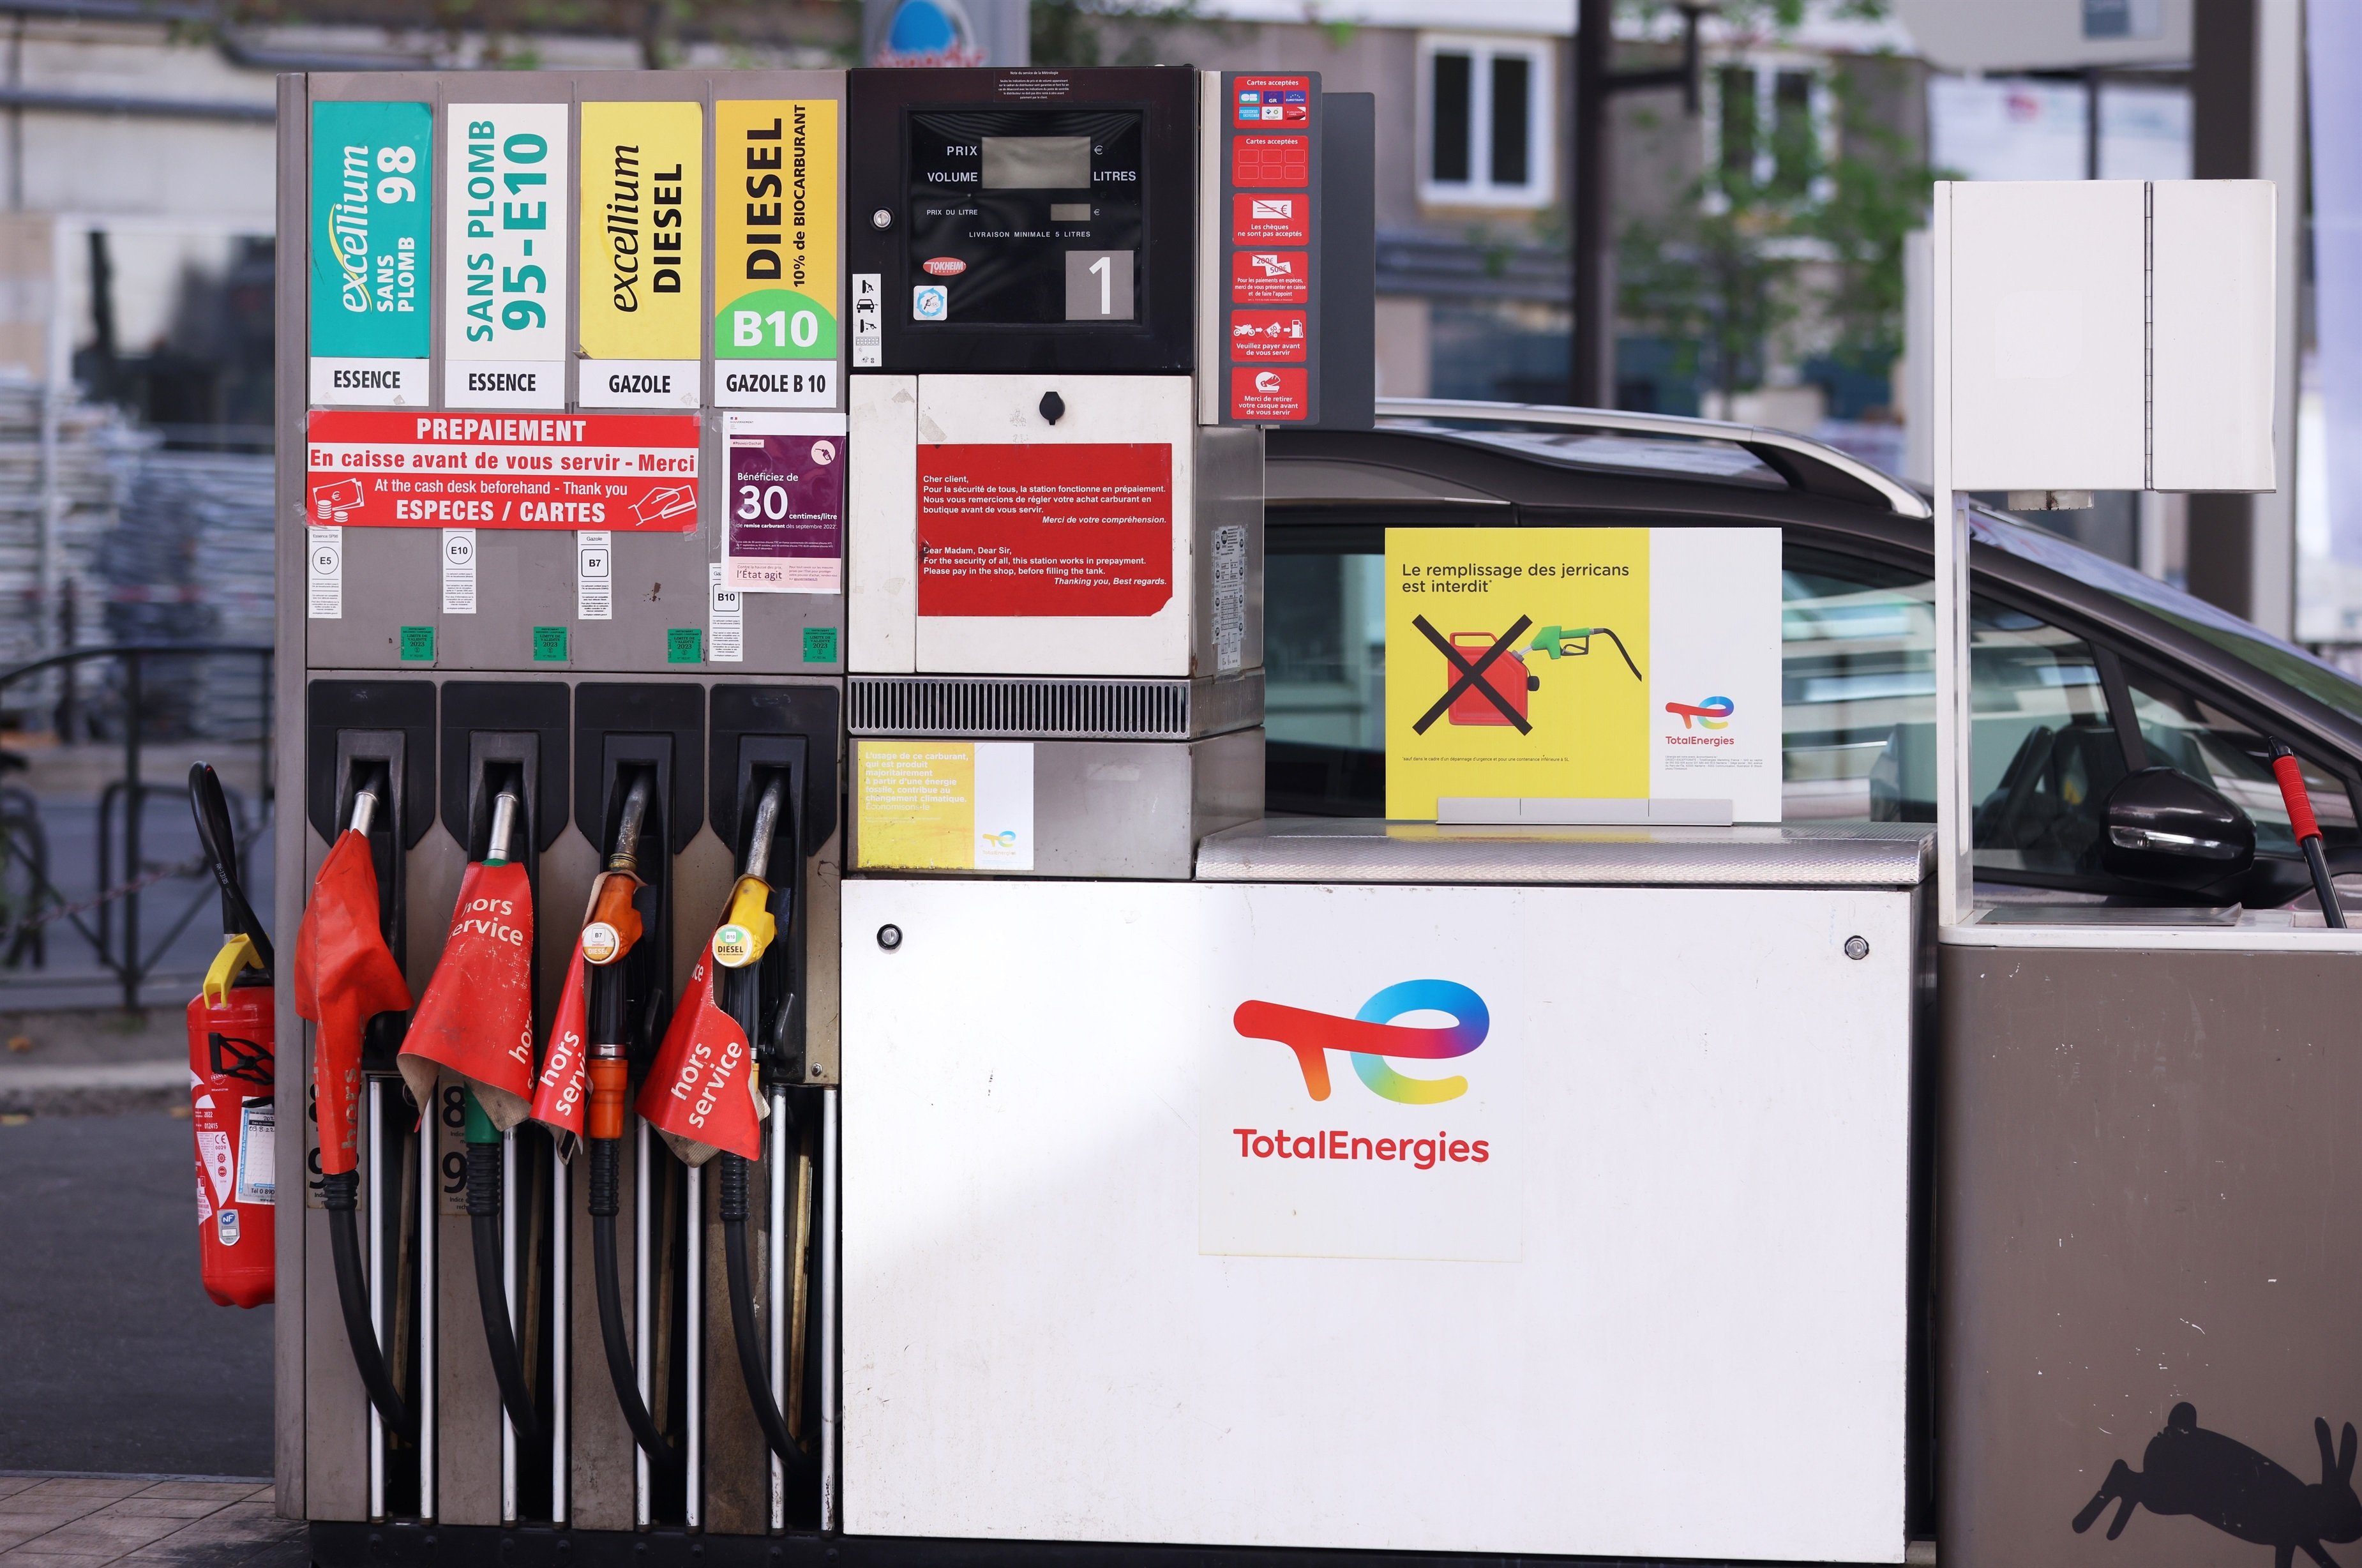 EuropaPress 4748978 gasolinera servicio suministro combustible huelga bloqueo refinerias total